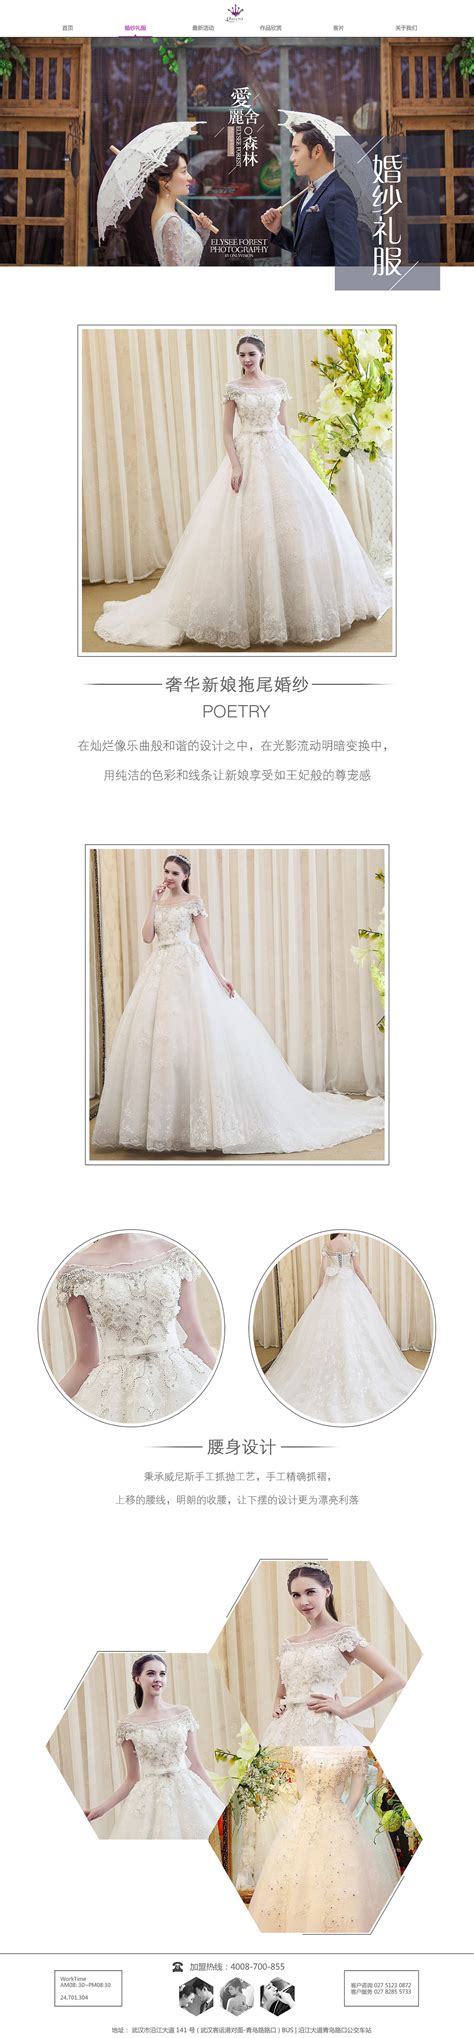 上海婚纱摄影网站优化设计